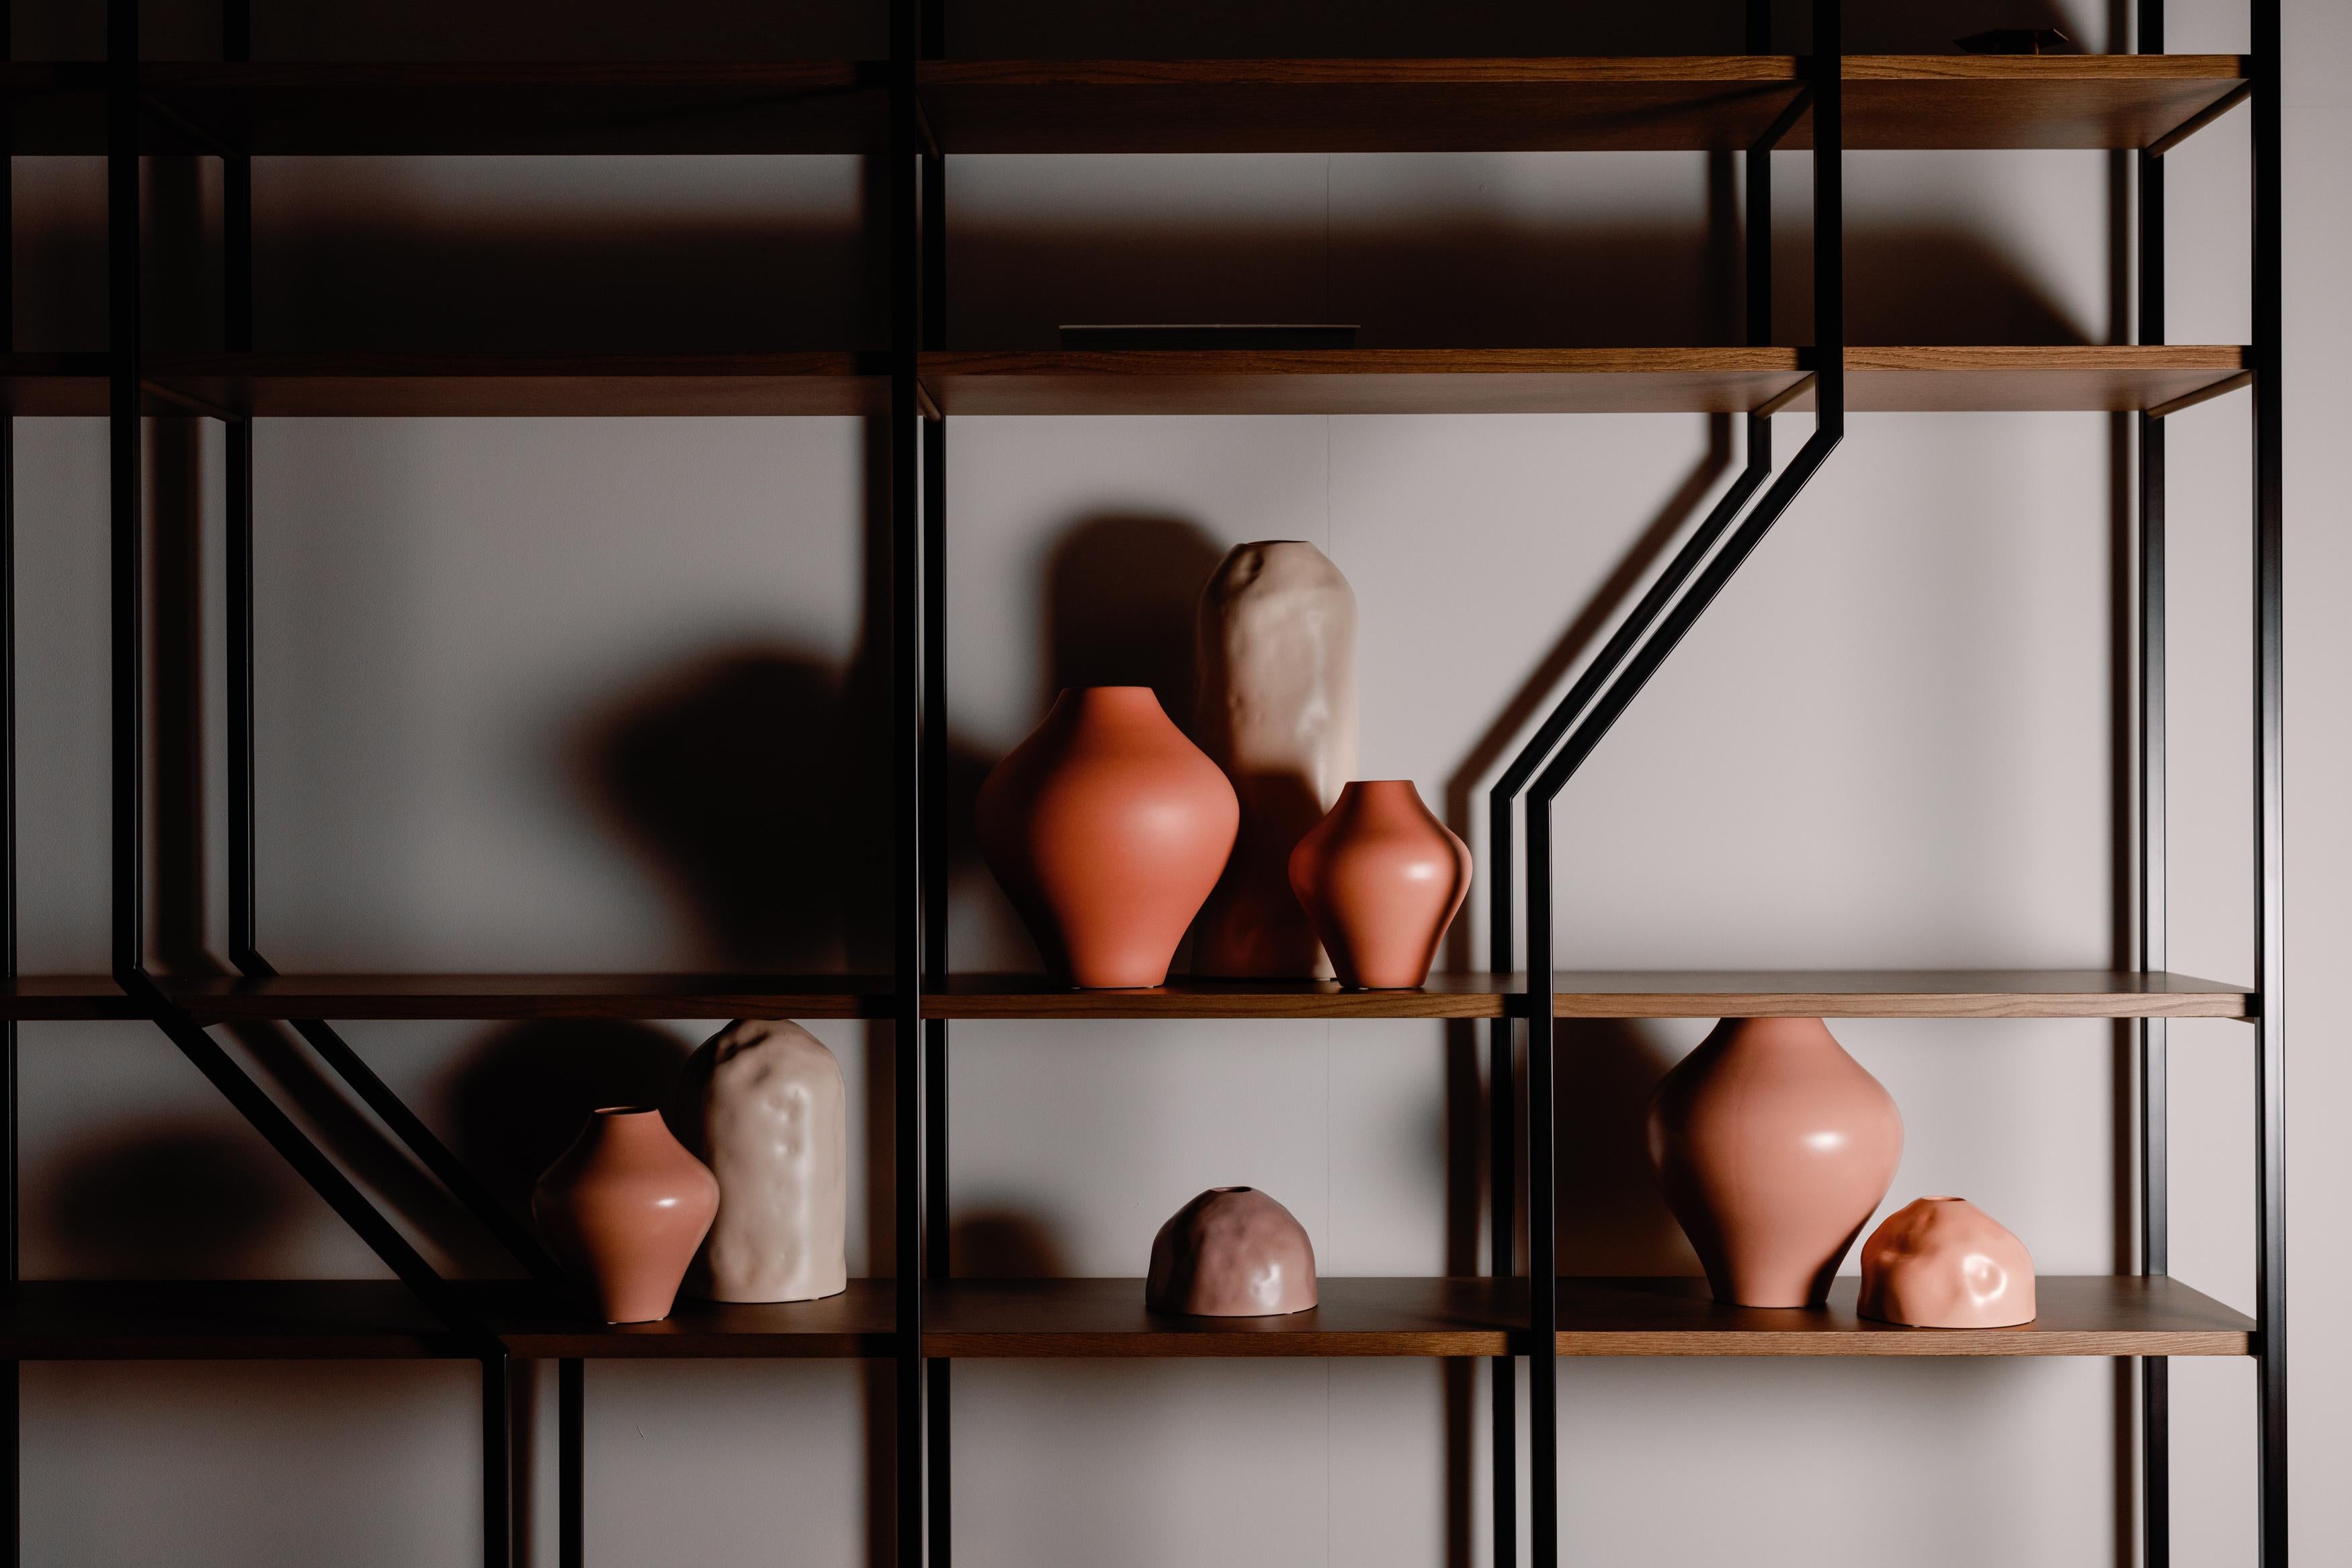 Set/8 Keramikgefäße, Lusitanus Home Collection, handgefertigt in Portugal - Europa von Lusitanus Home.

Dieses schöne Set besteht aus acht wasserfesten Keramikvasen, die sich perfekt für endlose Kombinationen mit oder ohne Blumen eignen.

Jedes